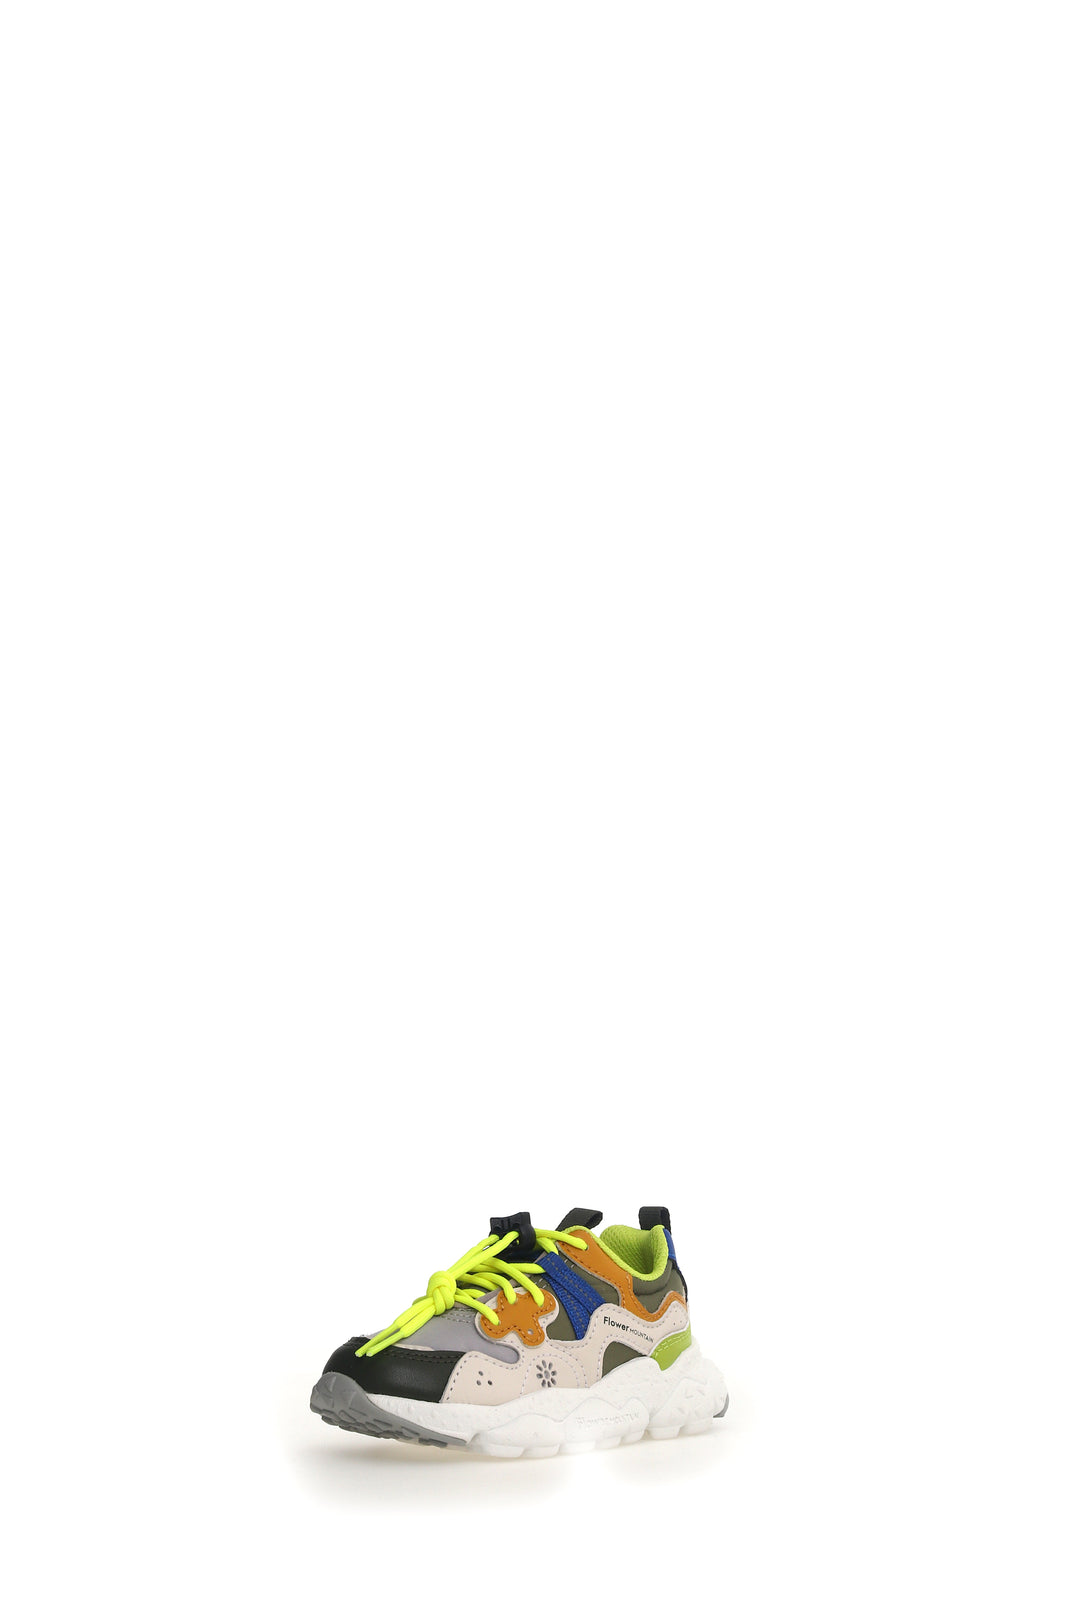 Sneakers Yamano 3 Junior E-Calf / Nylon Militare Grey / Cipria / Light Green